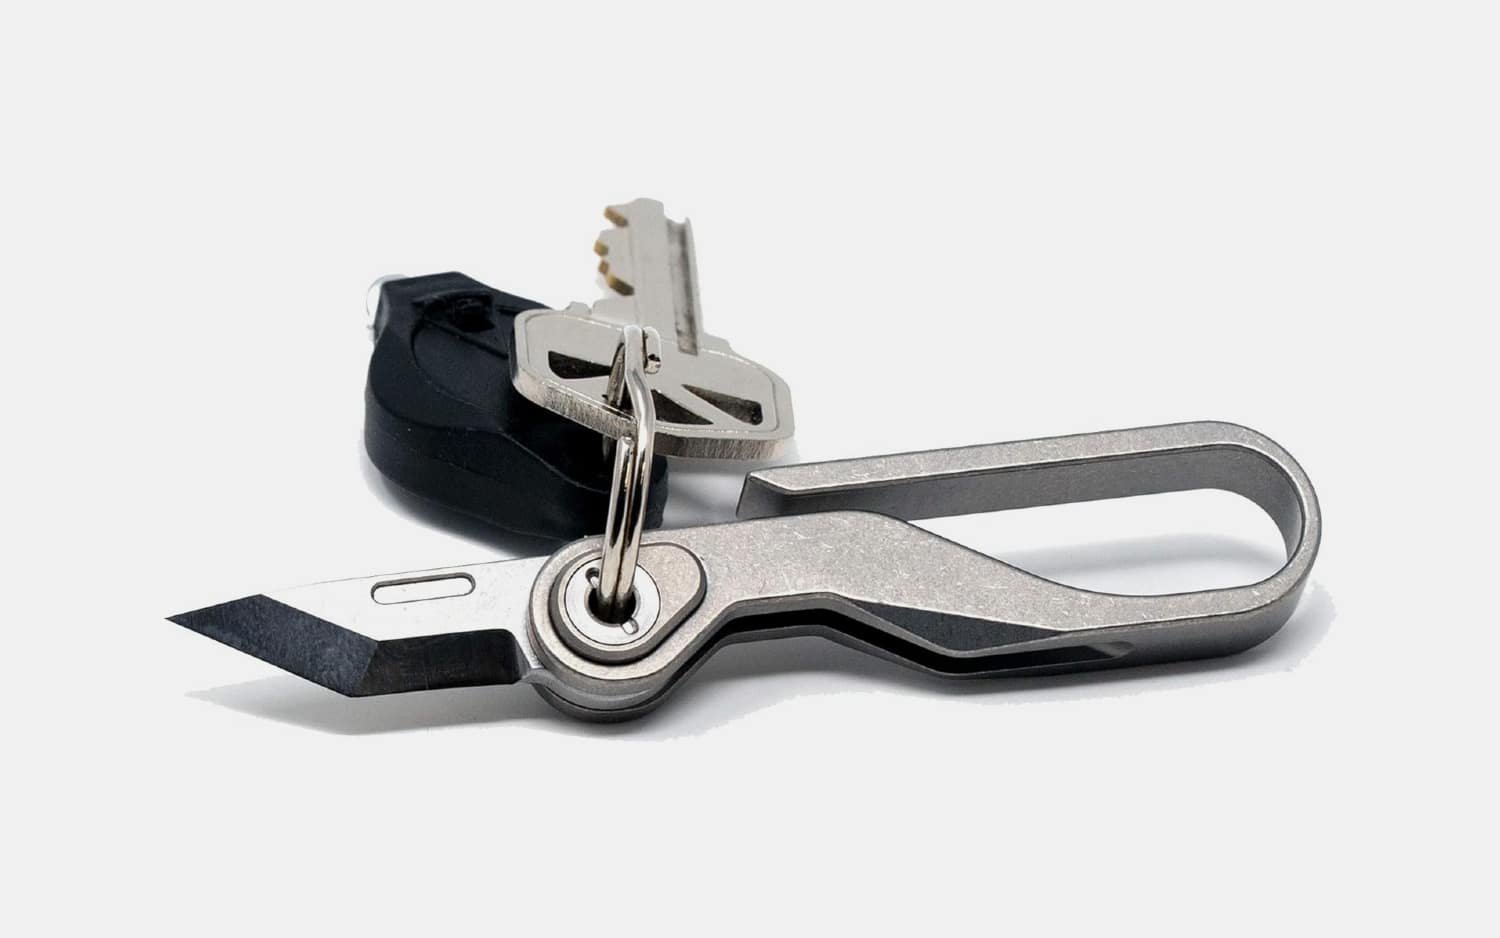 KLIP Titanium Key Hook Knife